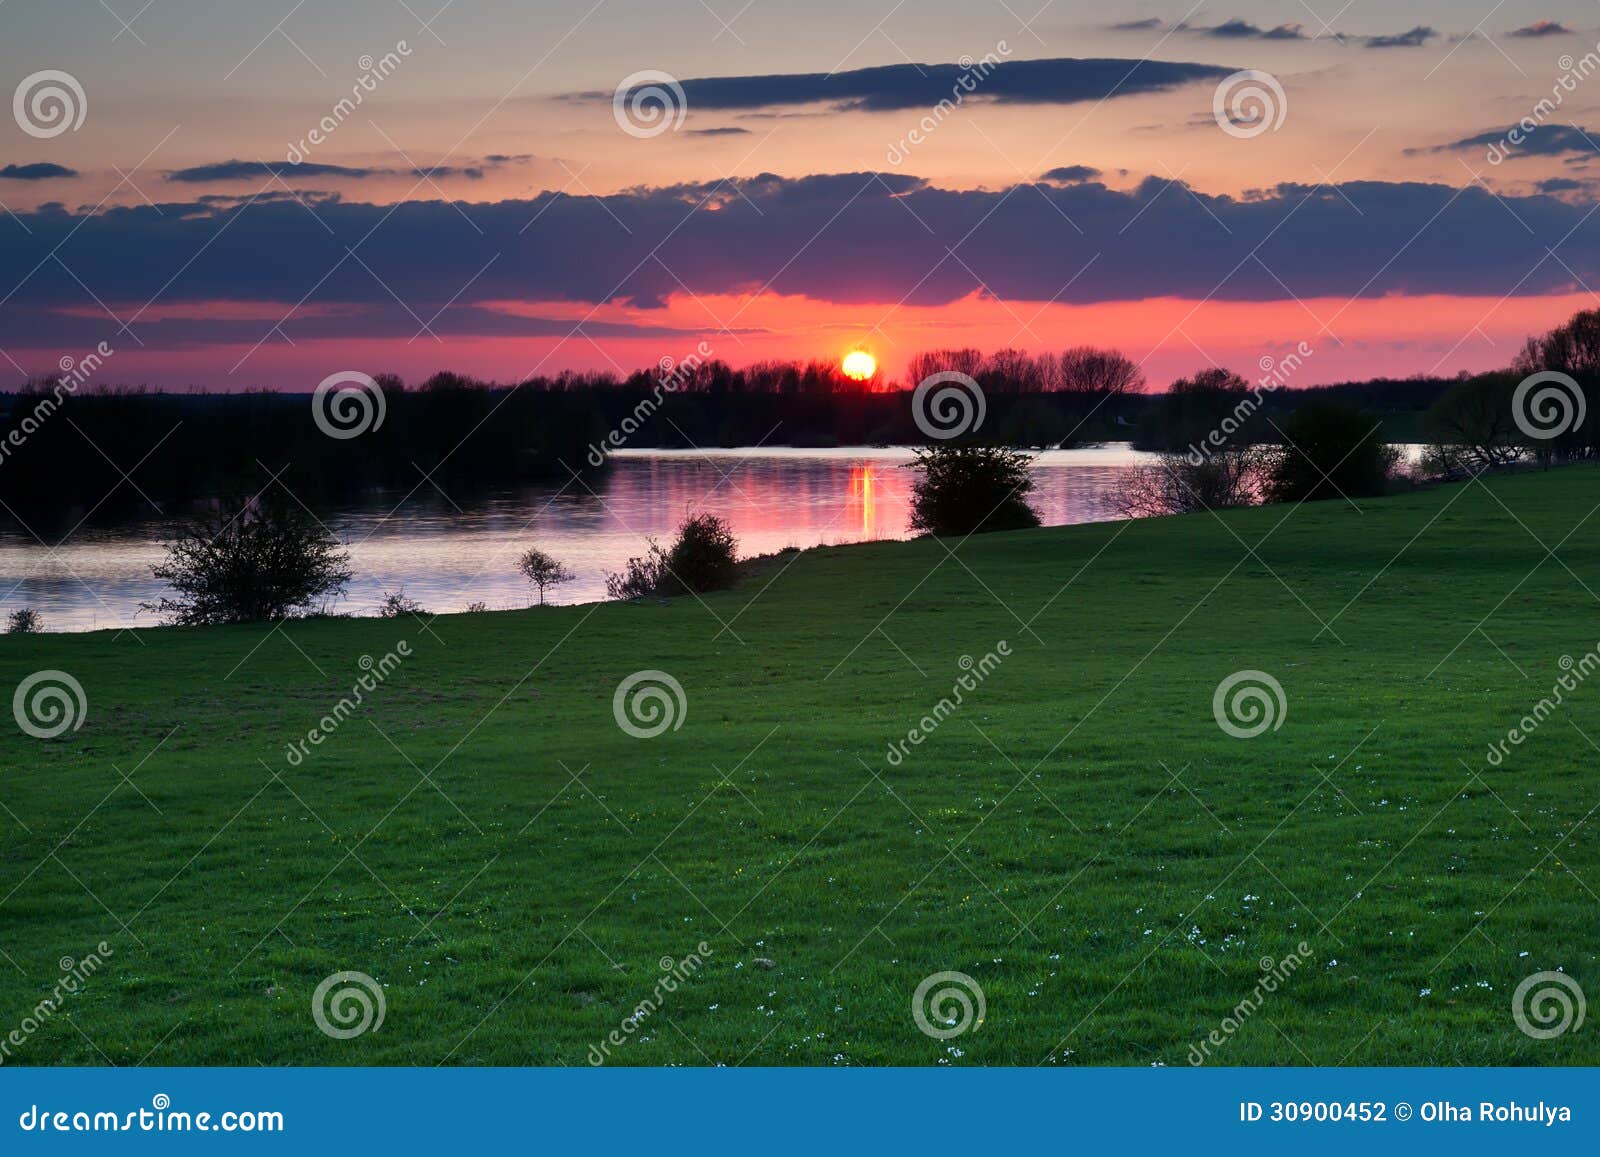 red sunset over river in gelderland